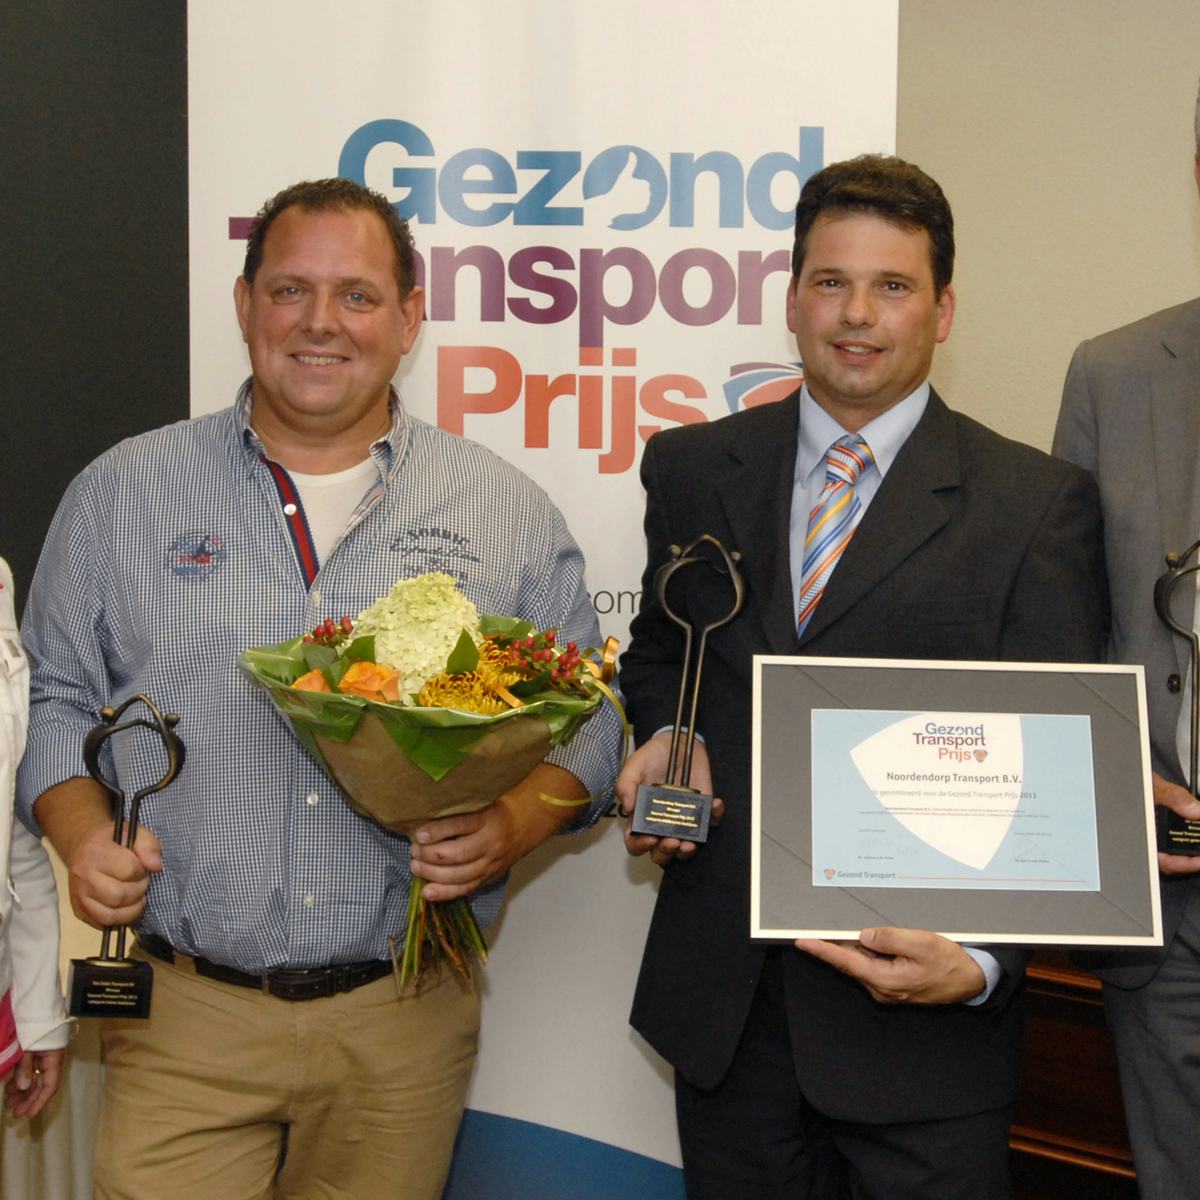 Winnaars Gezond Transport Prijs bekend